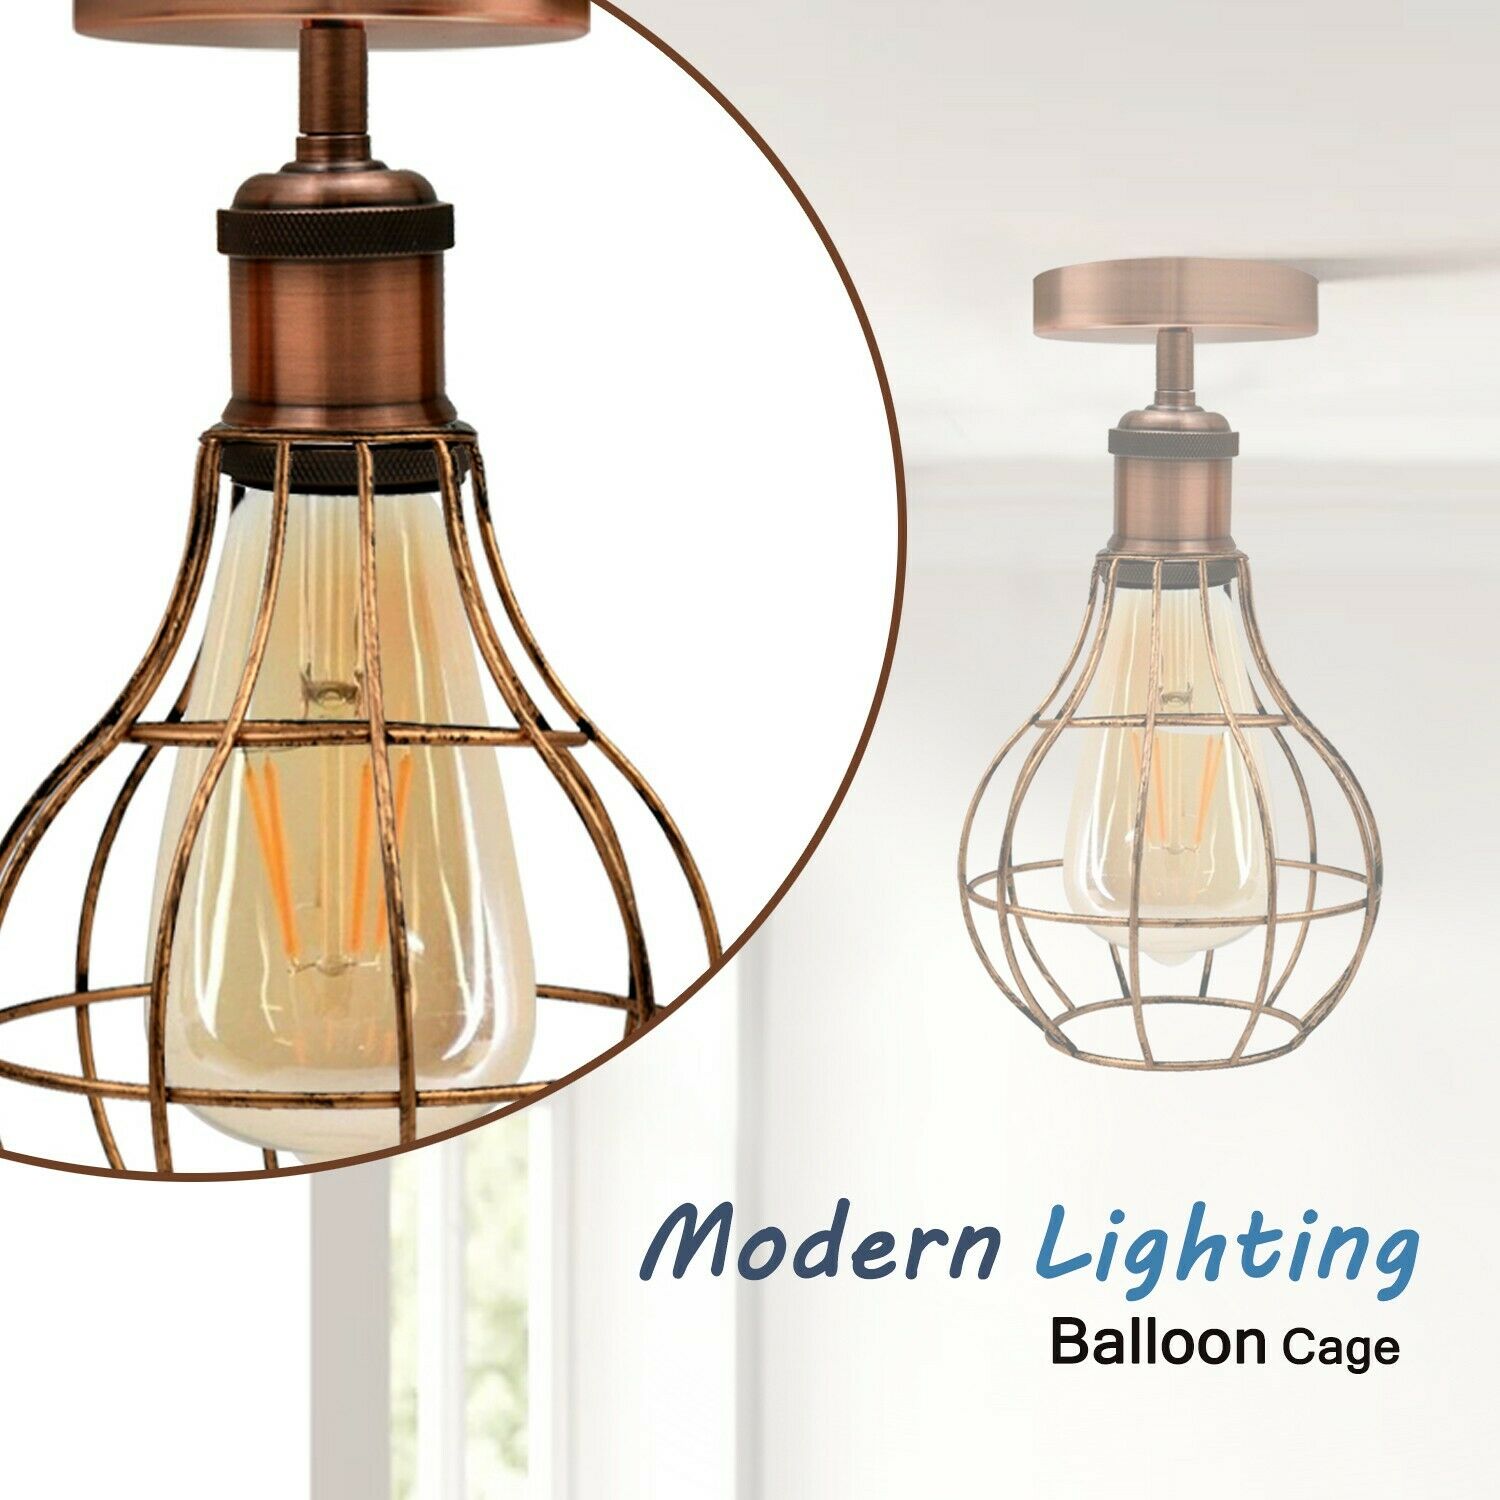 Vintage Retro Industrial Ceiling Light Shade Flush Mount Ceiling Lamp Fittings~3666 - LEDSone UK Ltd